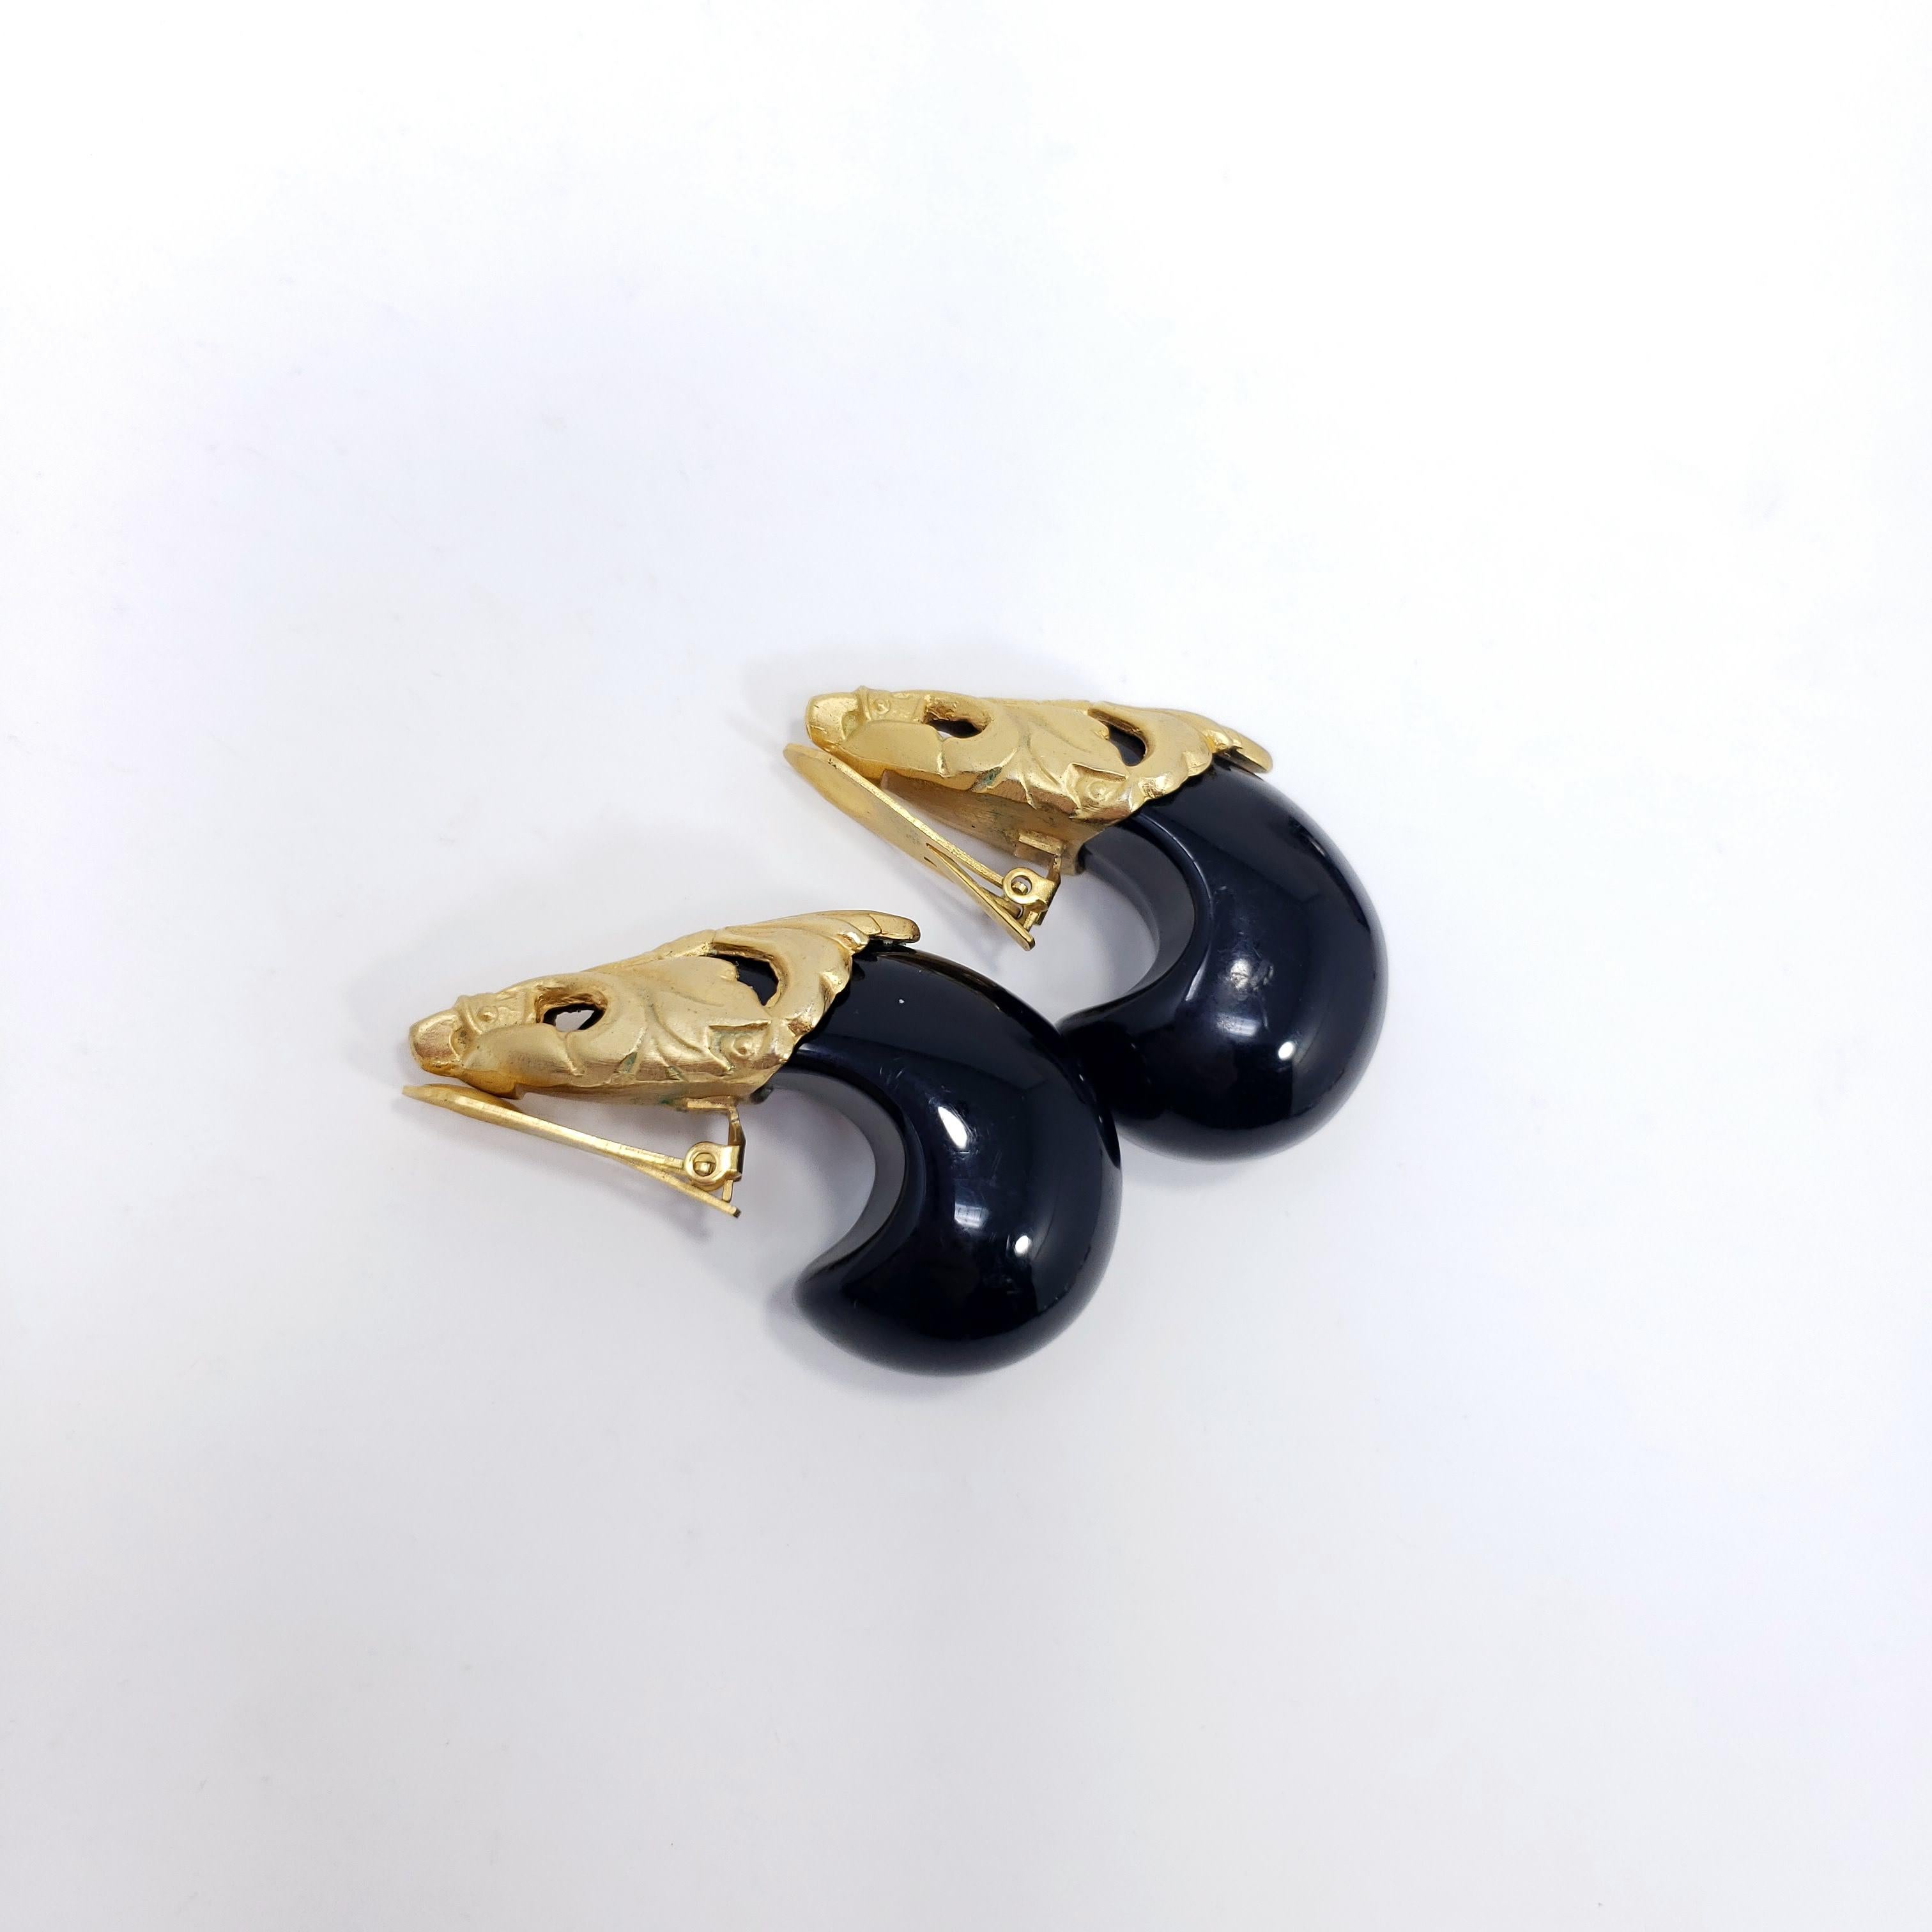 Retro-Schick! Diese großen und auffälligen Clip-Ohrringe haben klobige Harzakzente für einen stilvollen Look.

Gold-Ton.

Etwa Ende der 1900er Jahre.